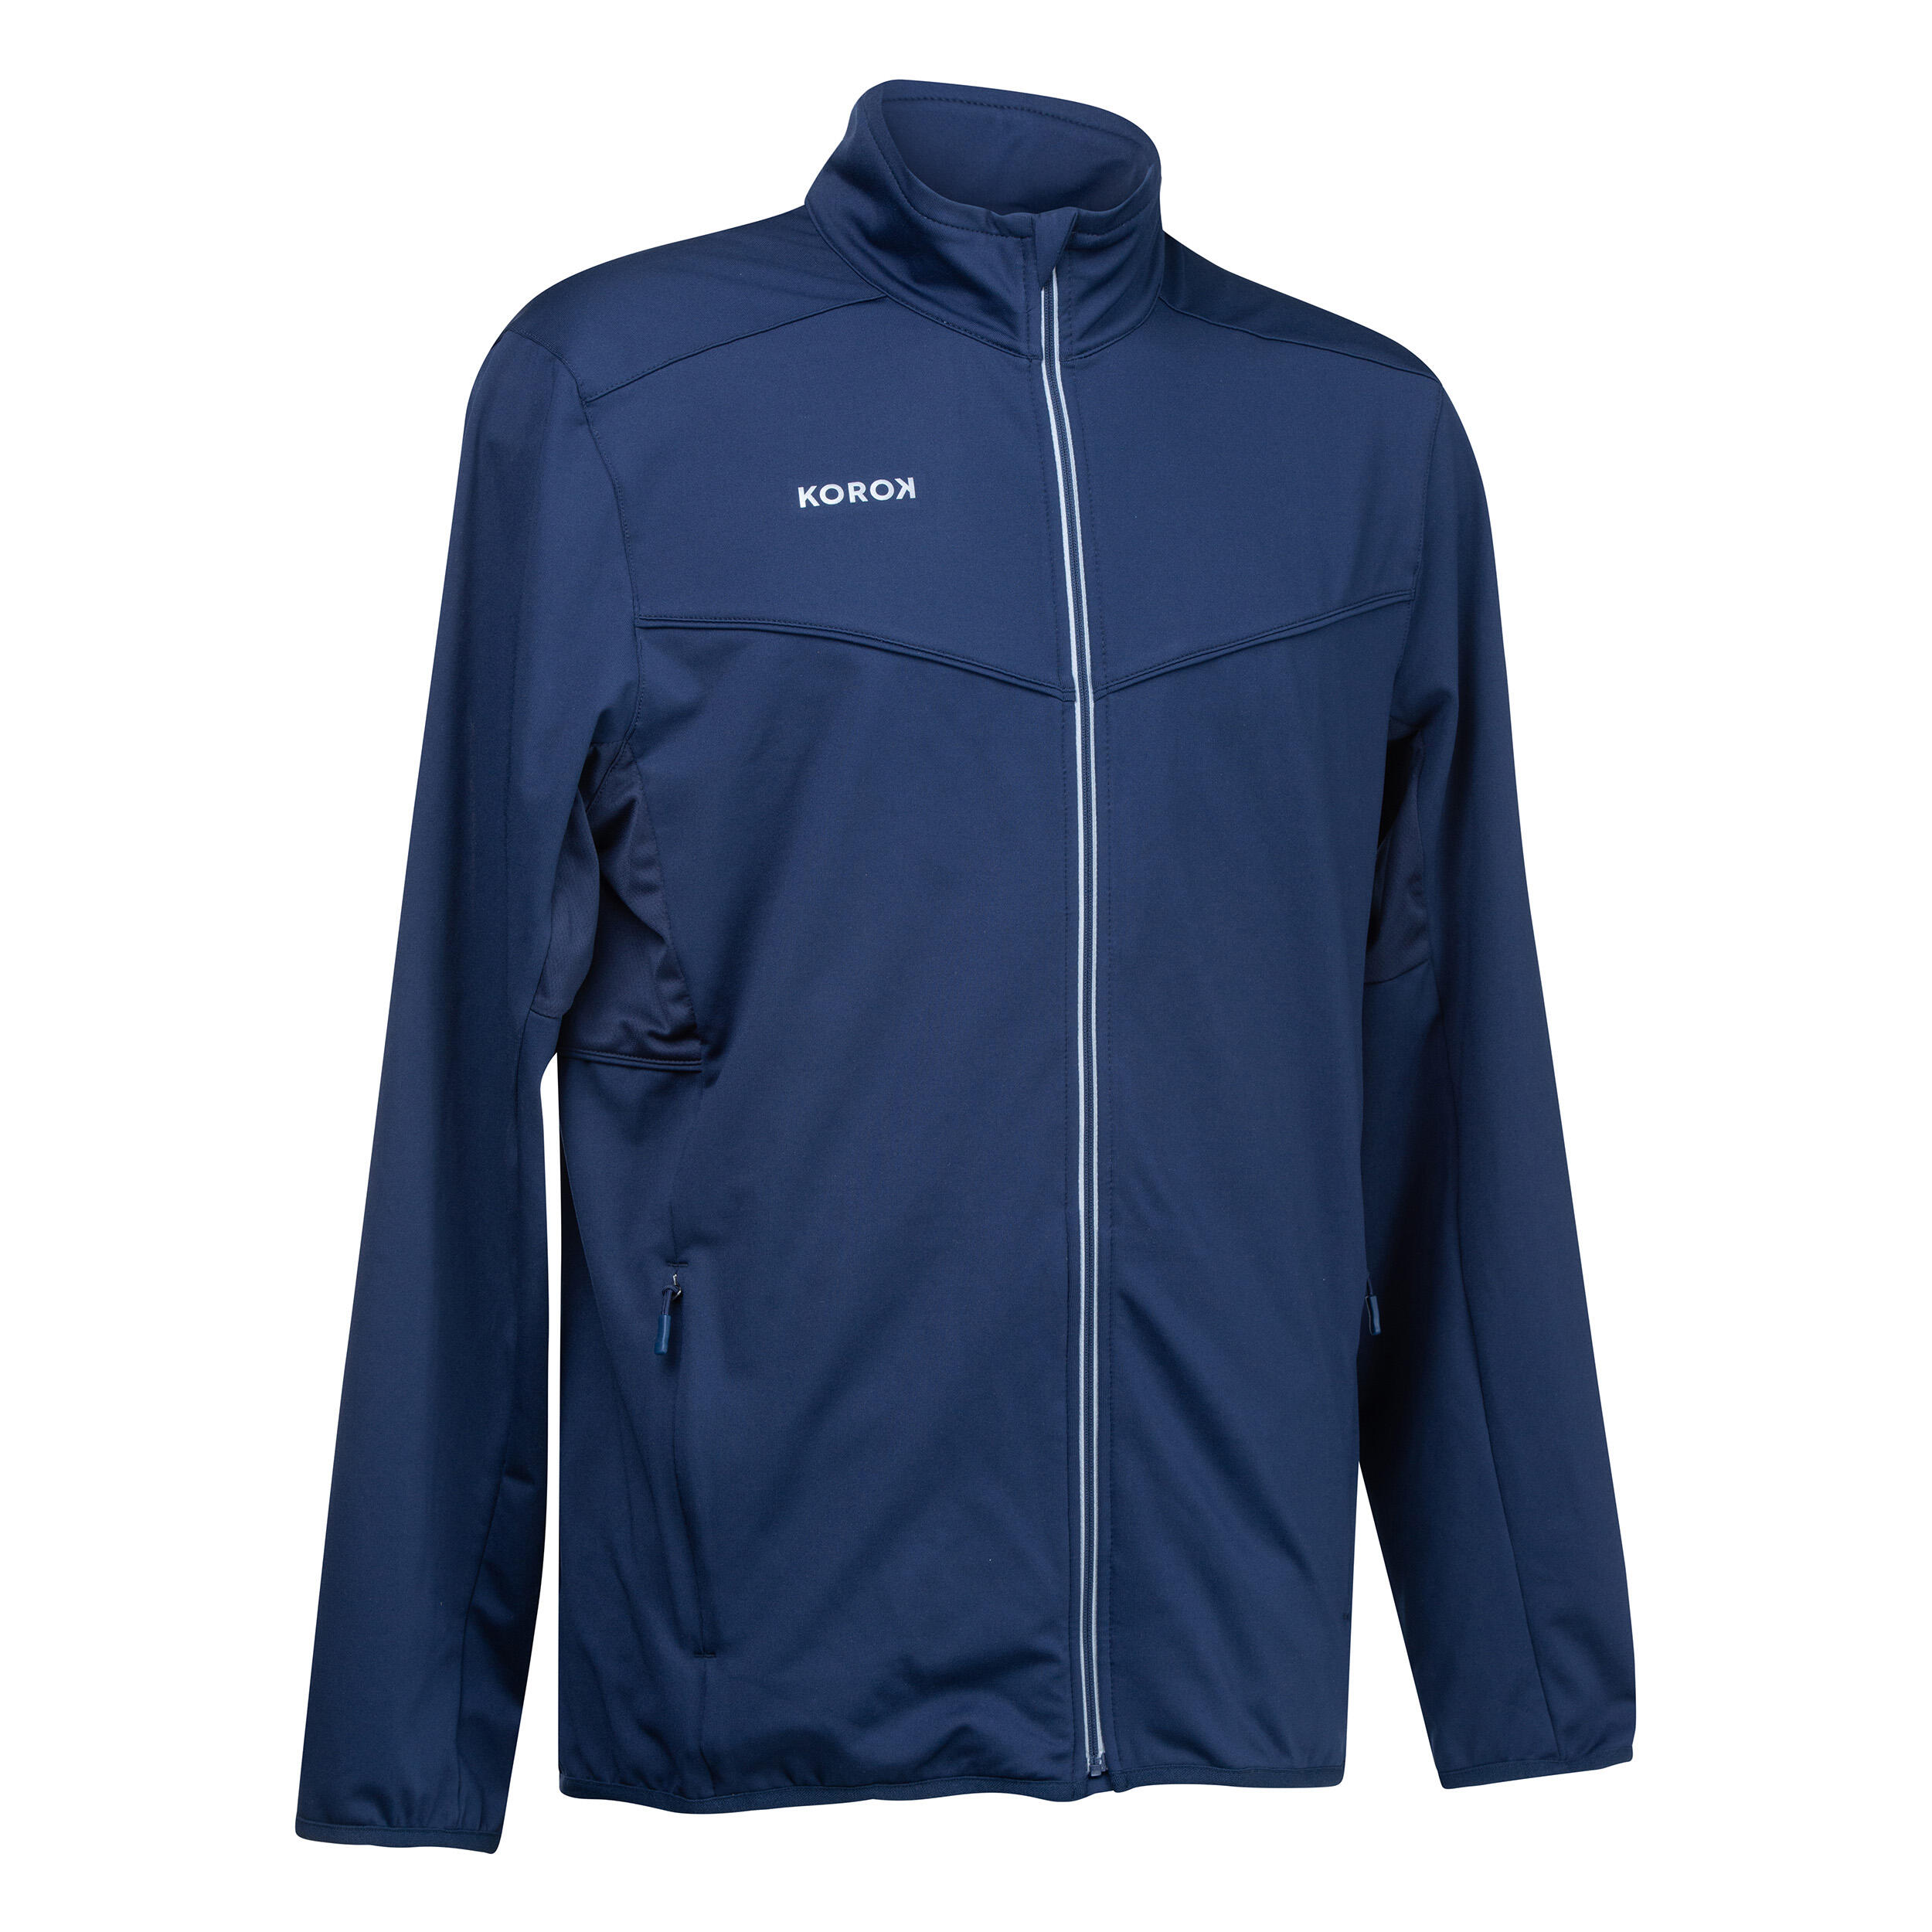 Men's Field Hockey Training Jacket FH900 - Navy Blue 1/4